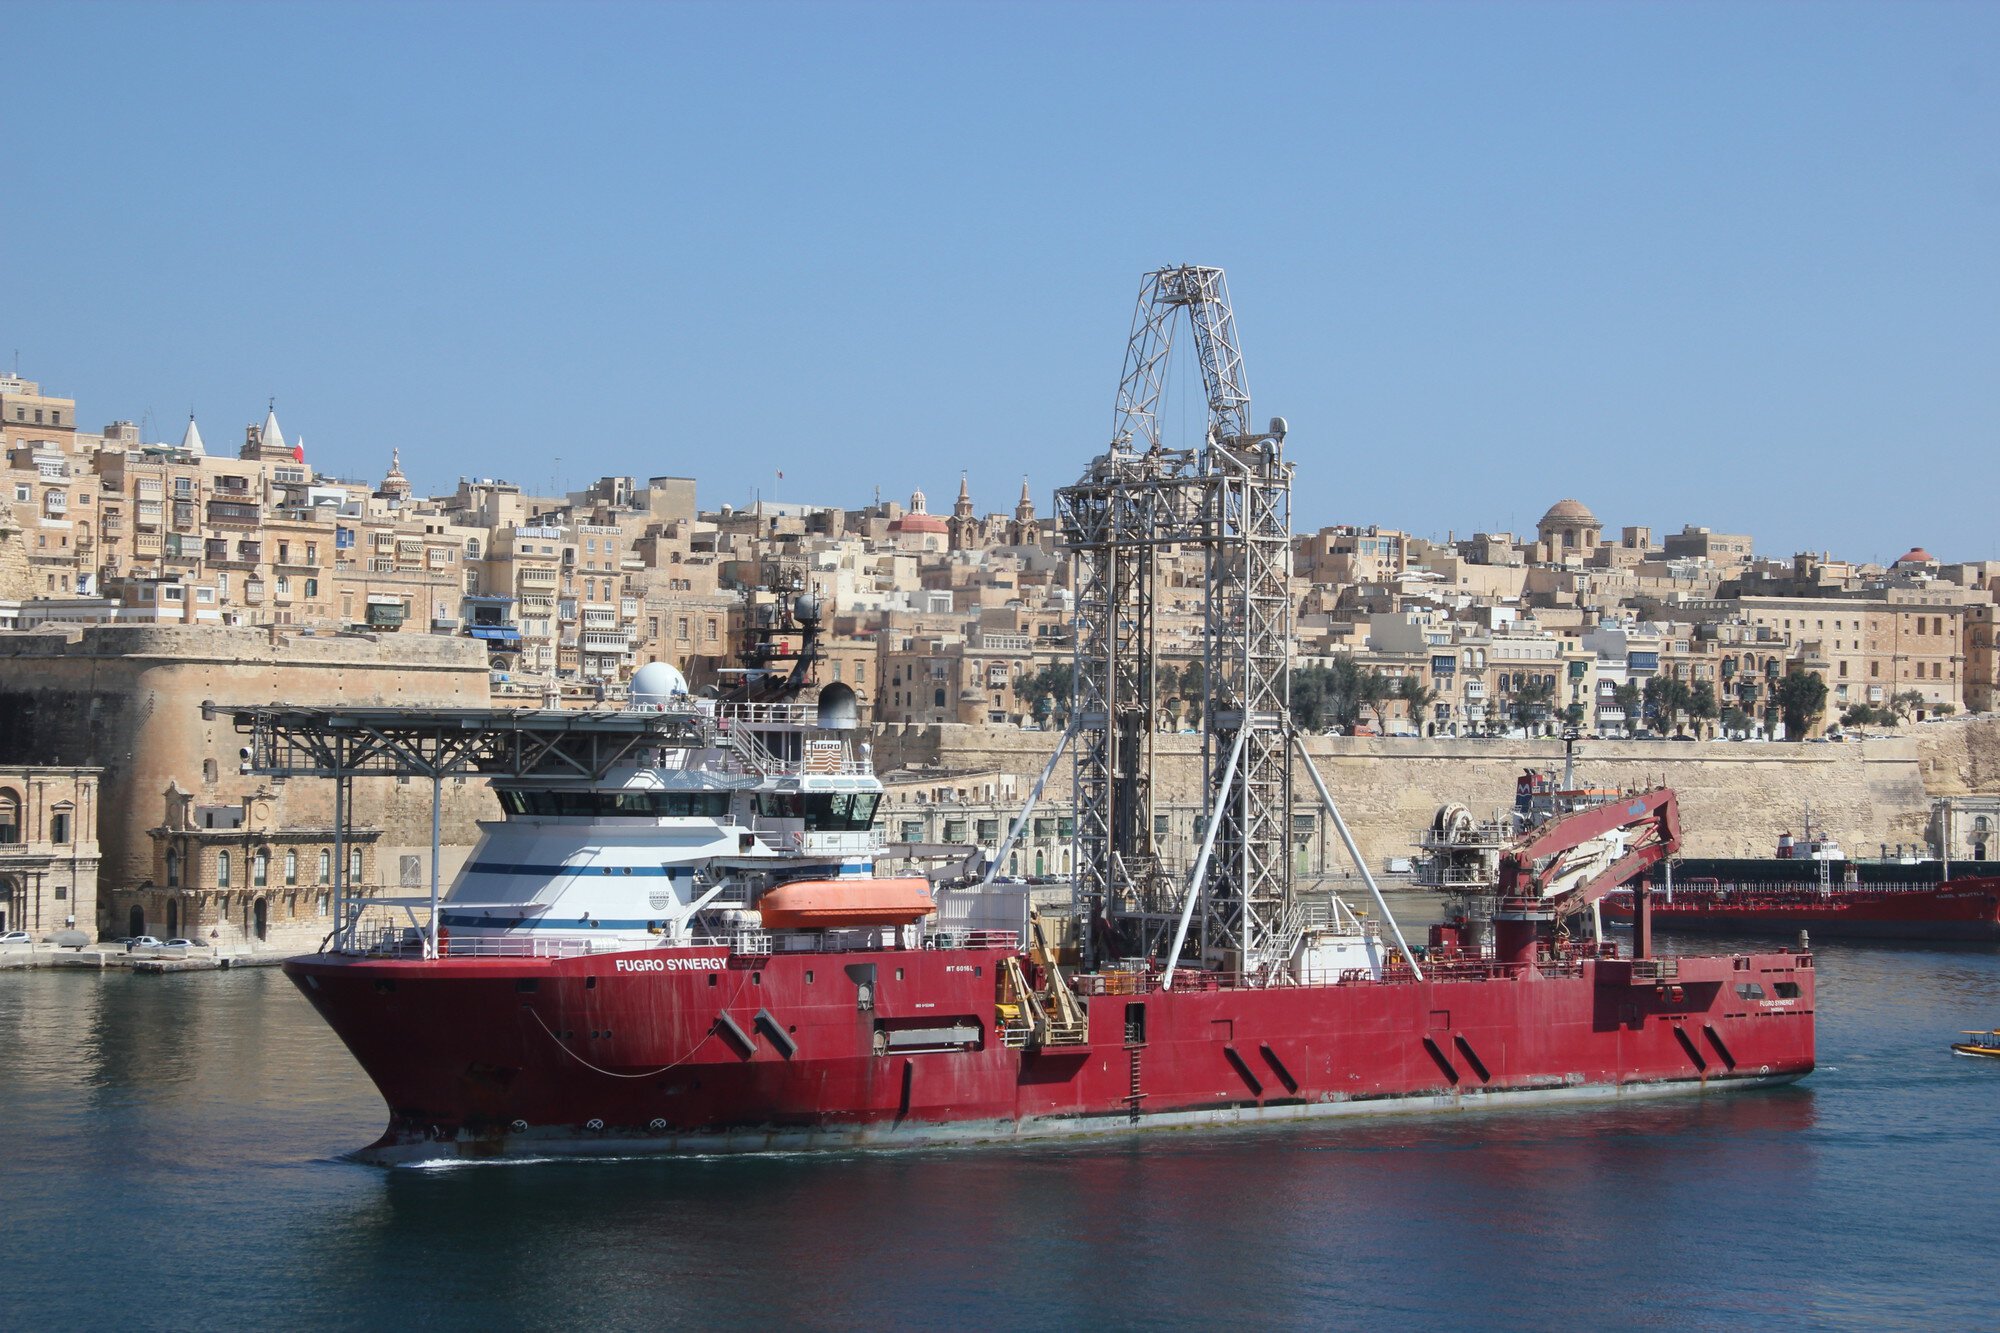 Fugro Synergy e-gh isla ix - 29.07.2013
ROV vessel Fugro Synergy, Malta.
Fugro Synergy in Malta